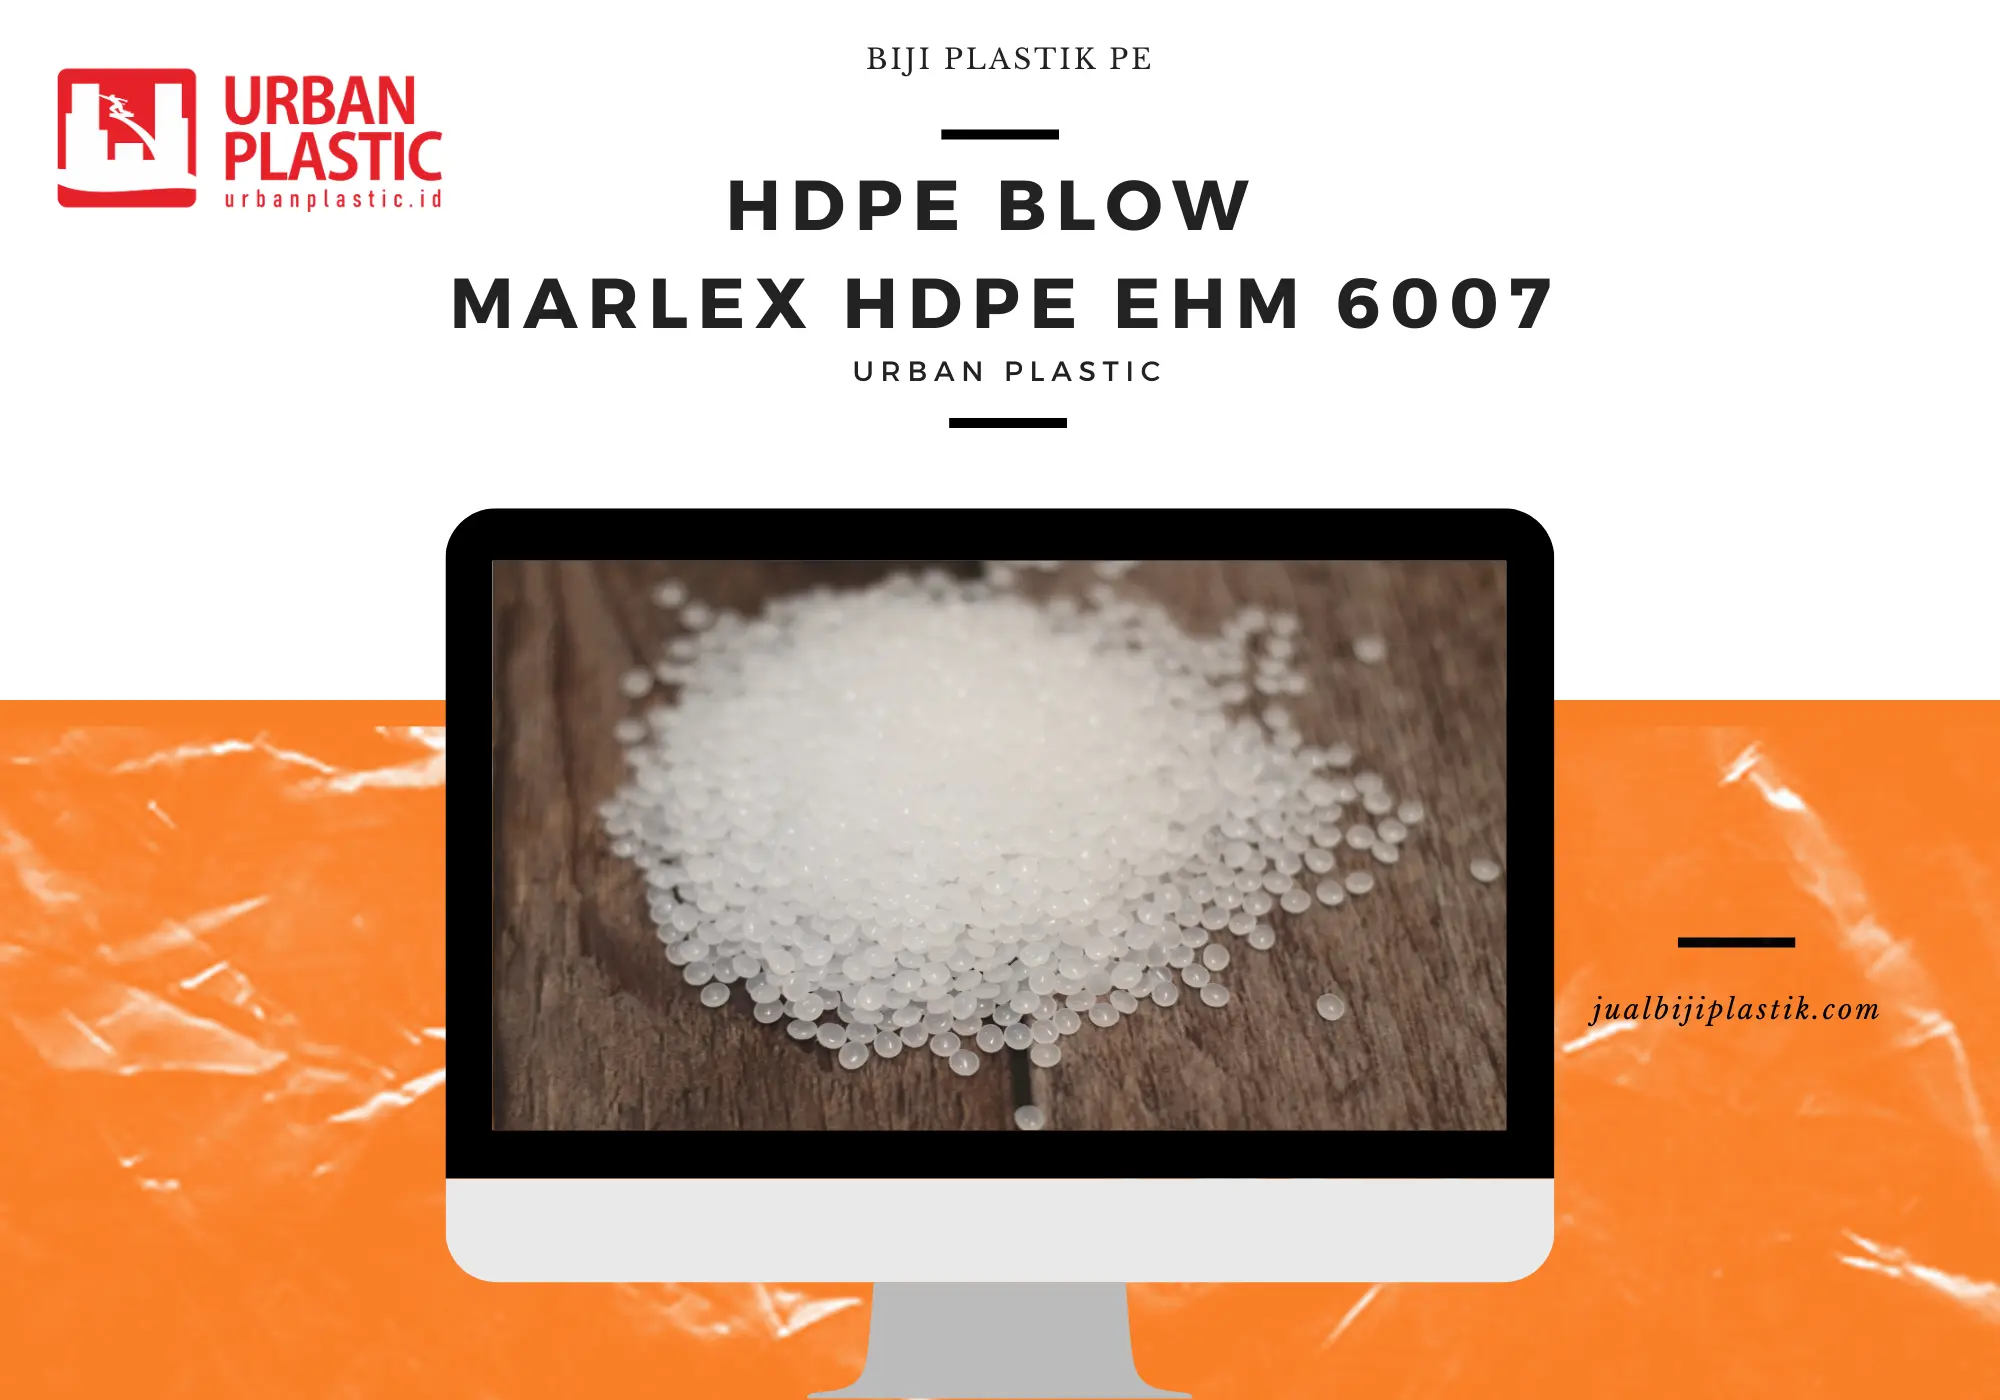 MARLEX HDPE EHM 6007